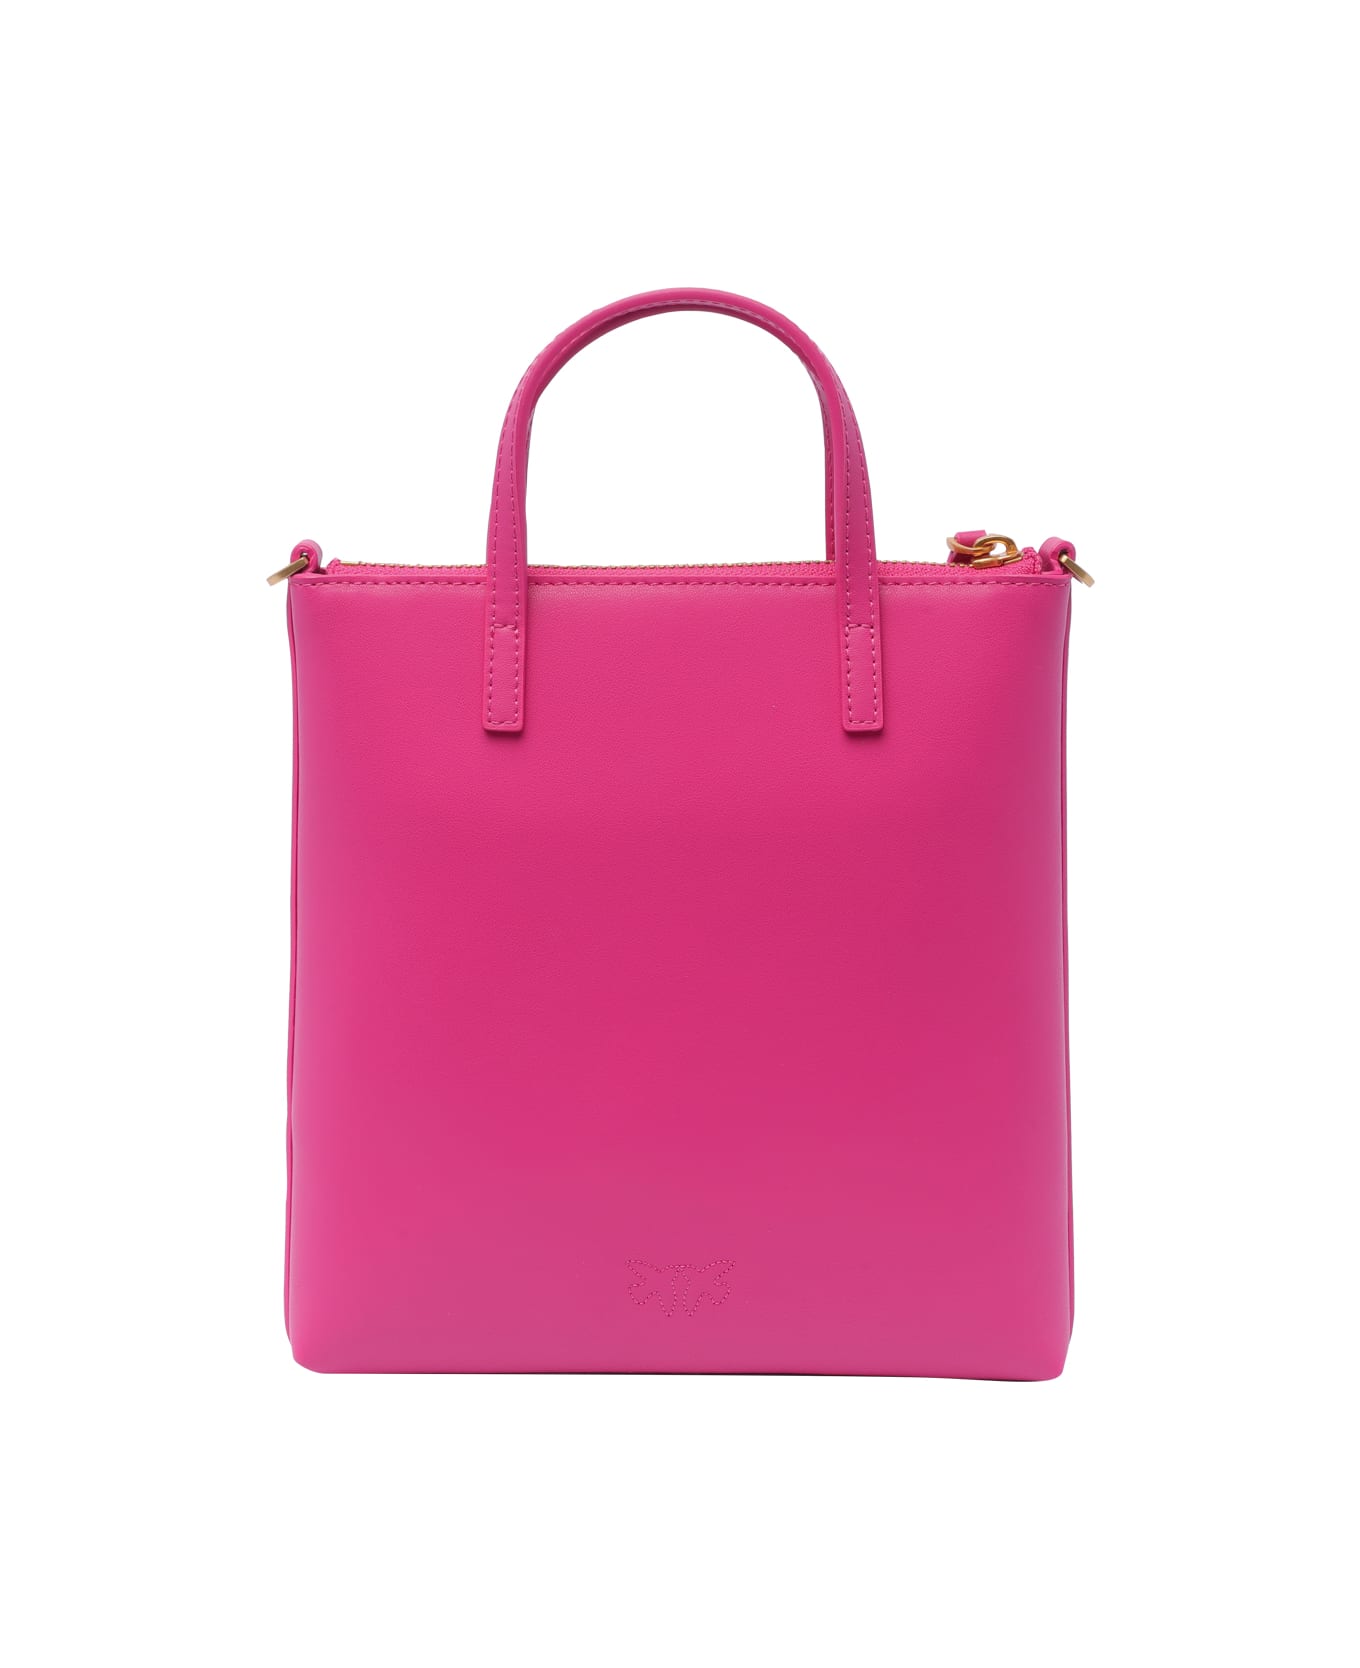 Pinko Mini Shopper Handbag - Fuchsia トートバッグ